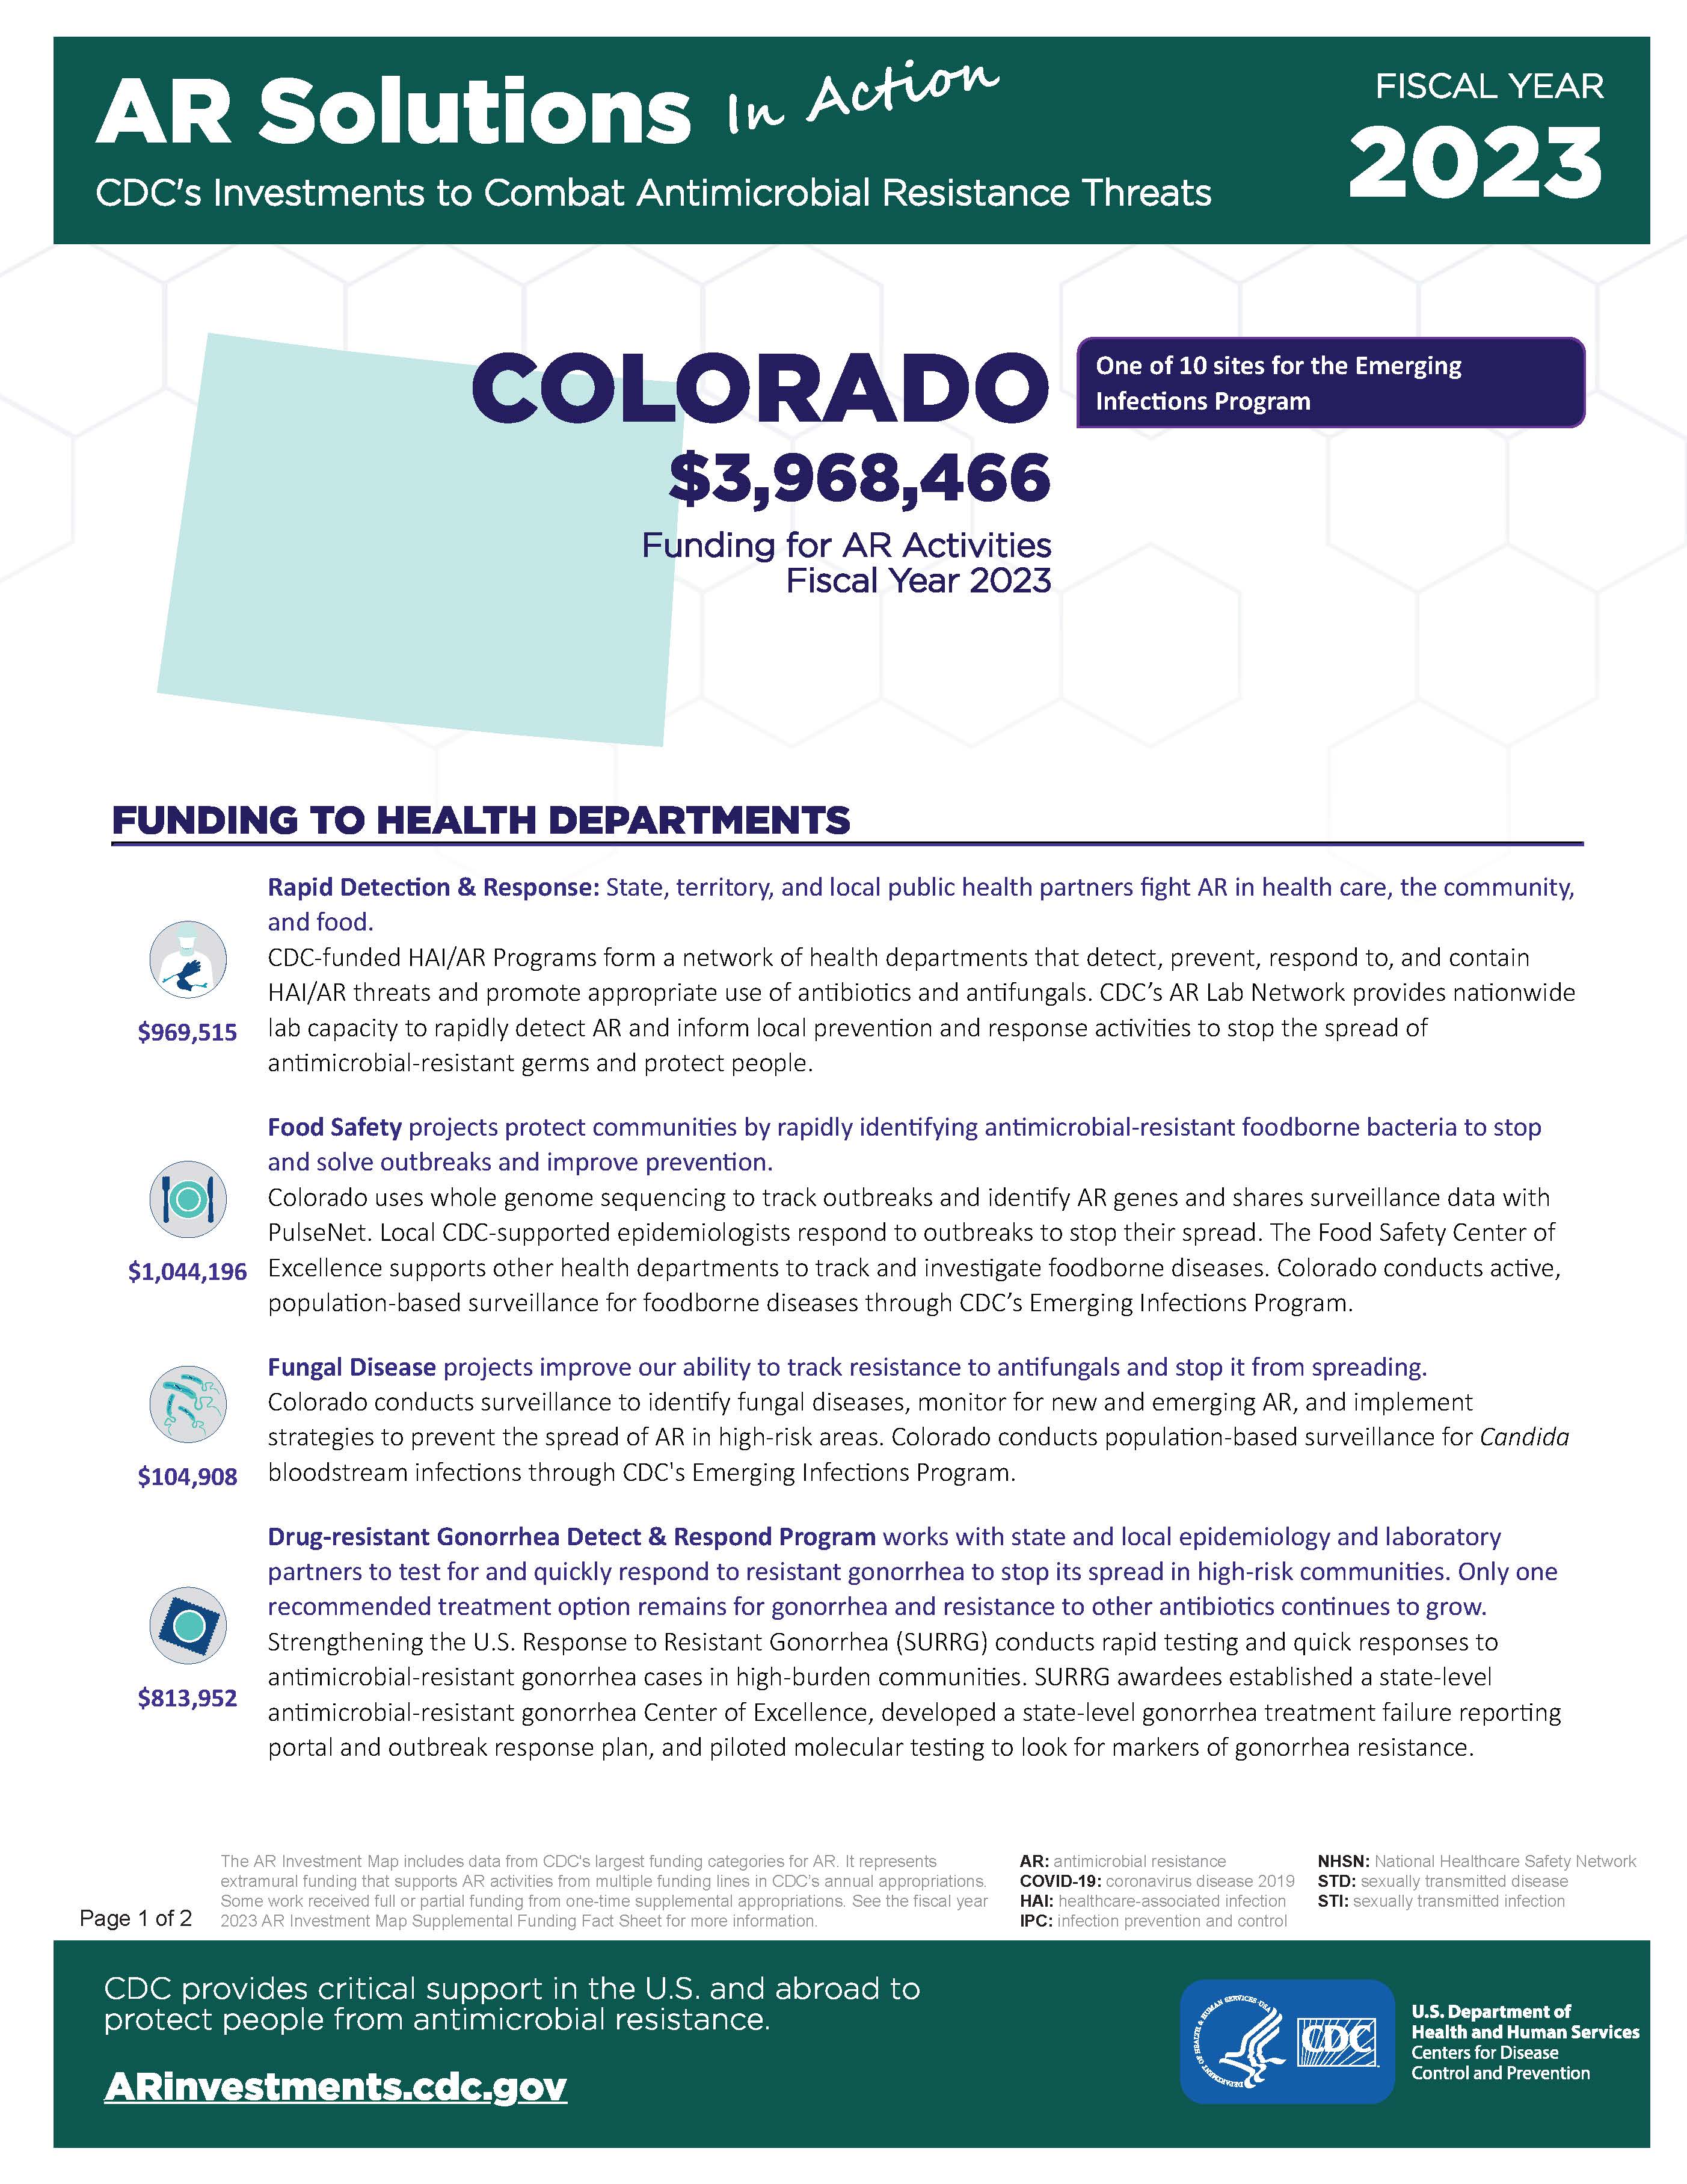 View Factsheet for Colorado